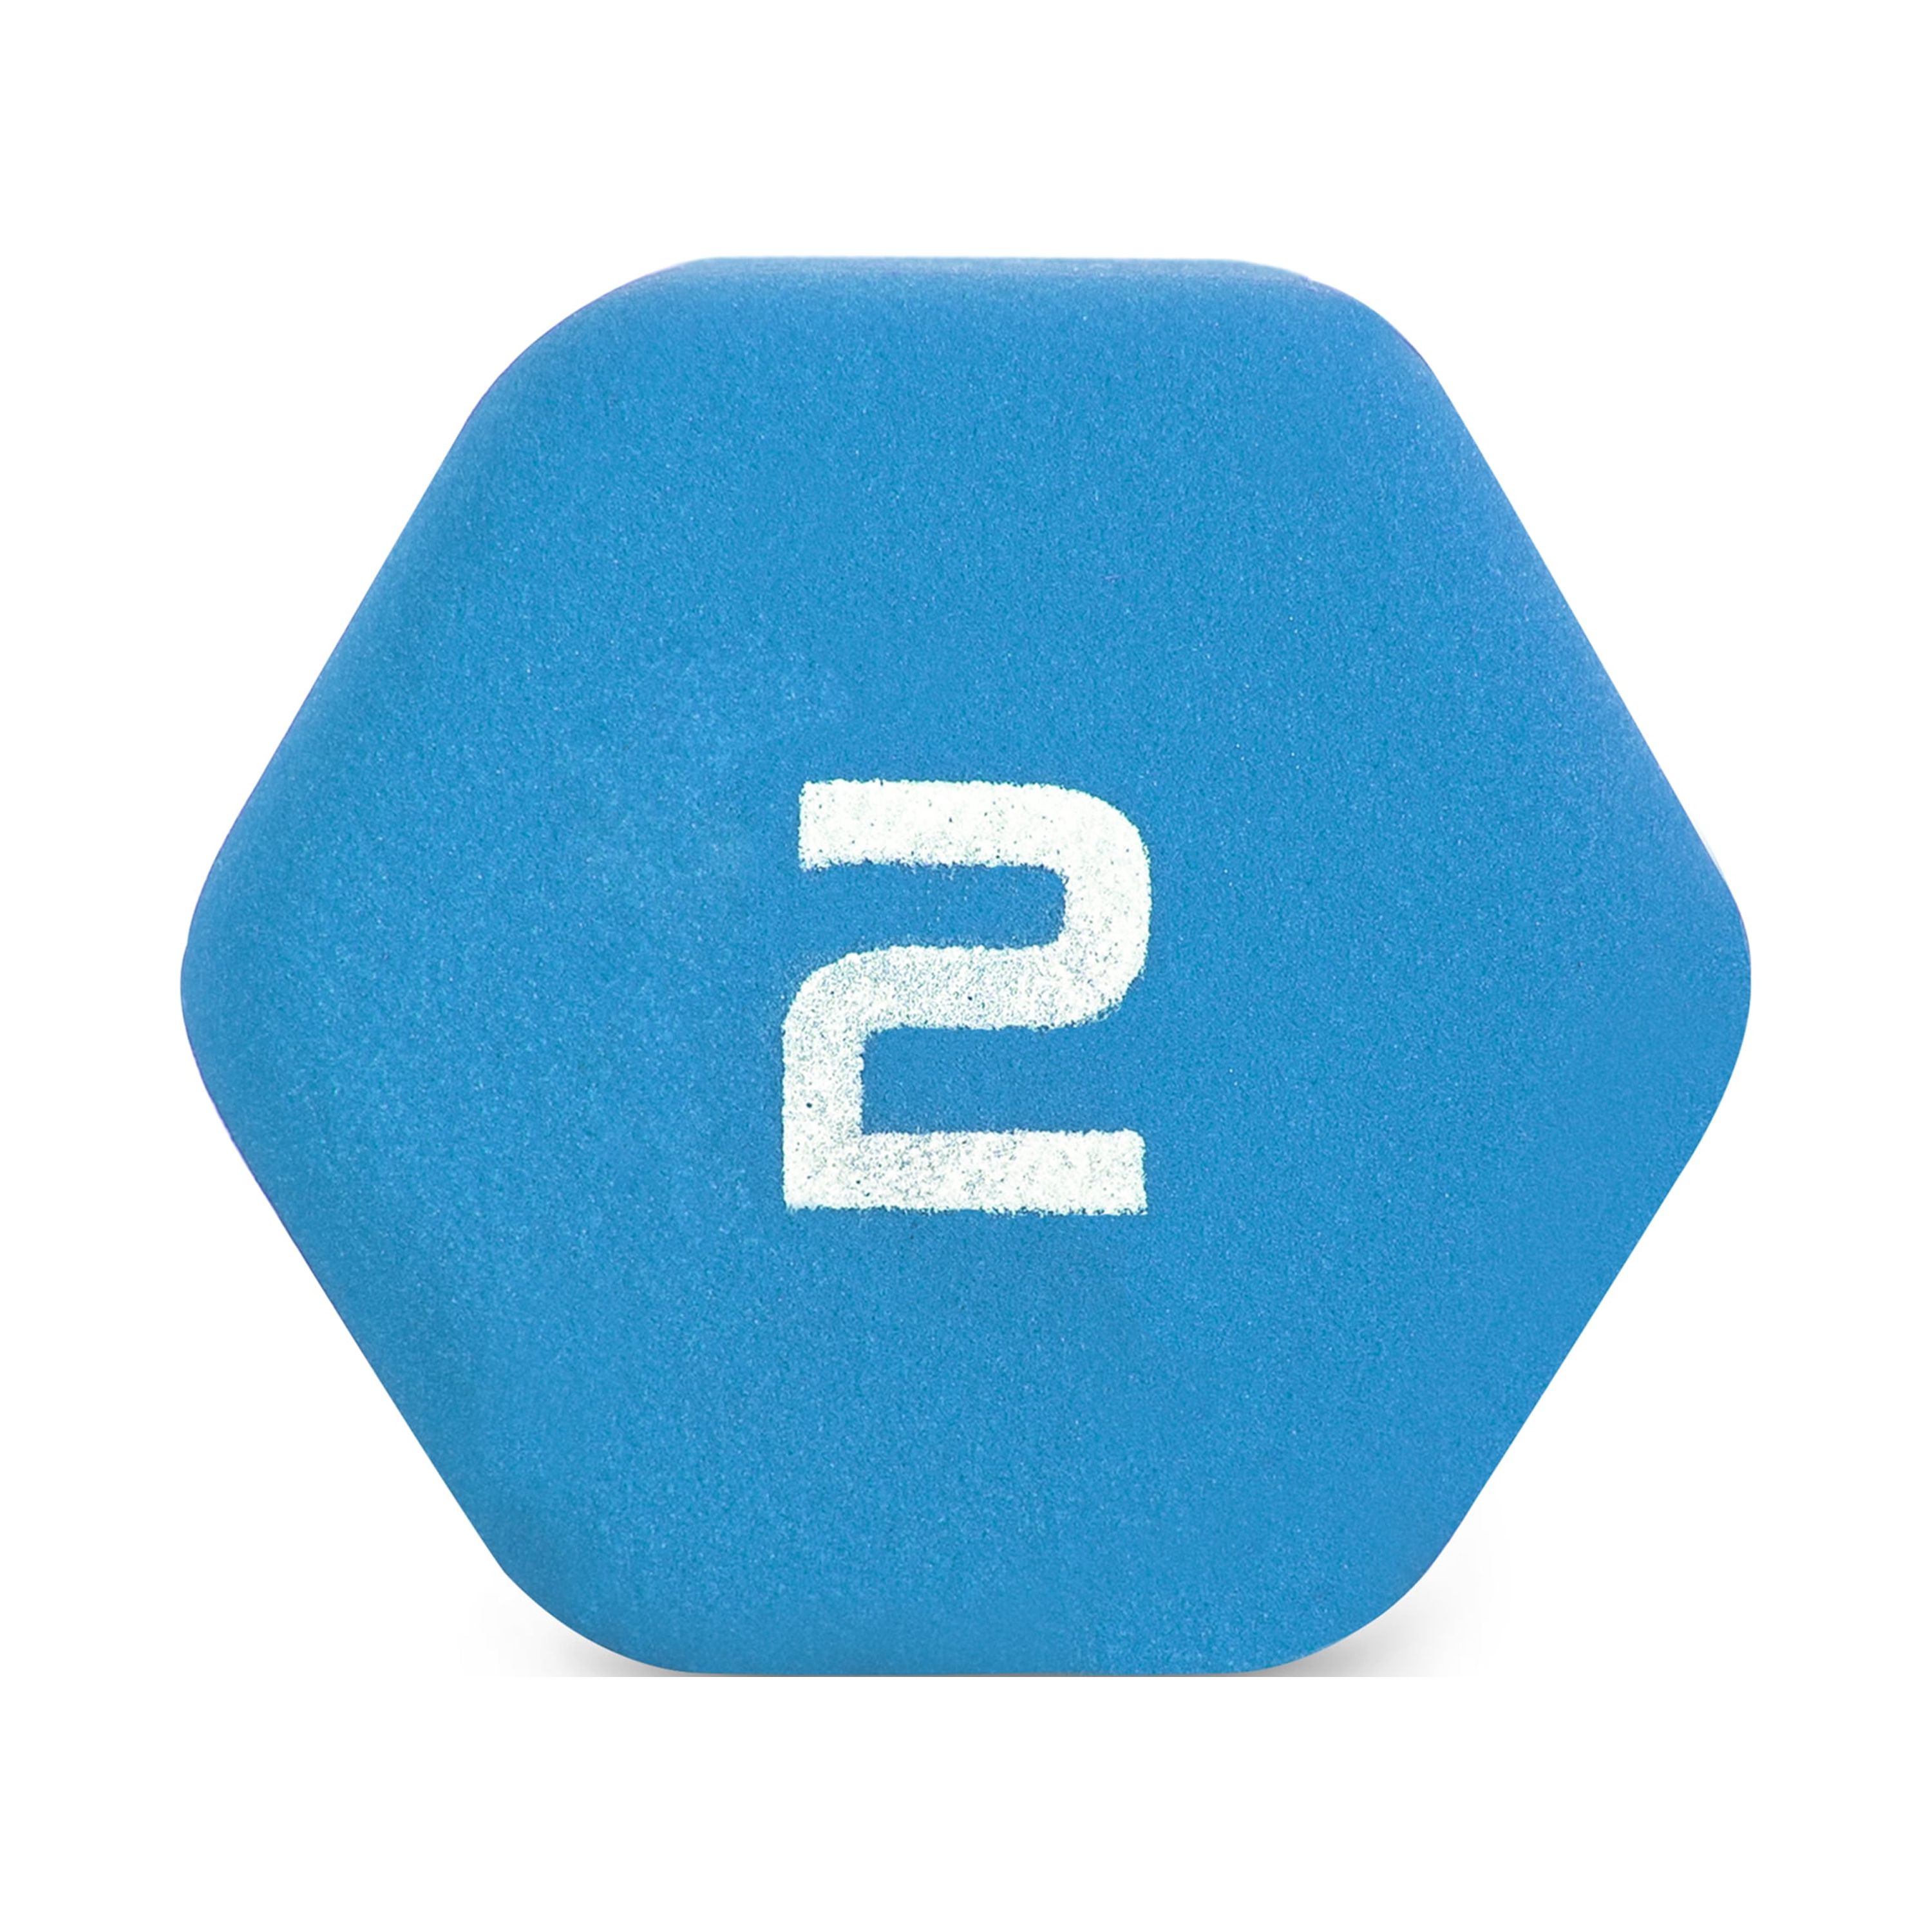 CAP Barbell 2lb Neoprene Dipped Dumbbell, Blue, Single - image 4 of 6